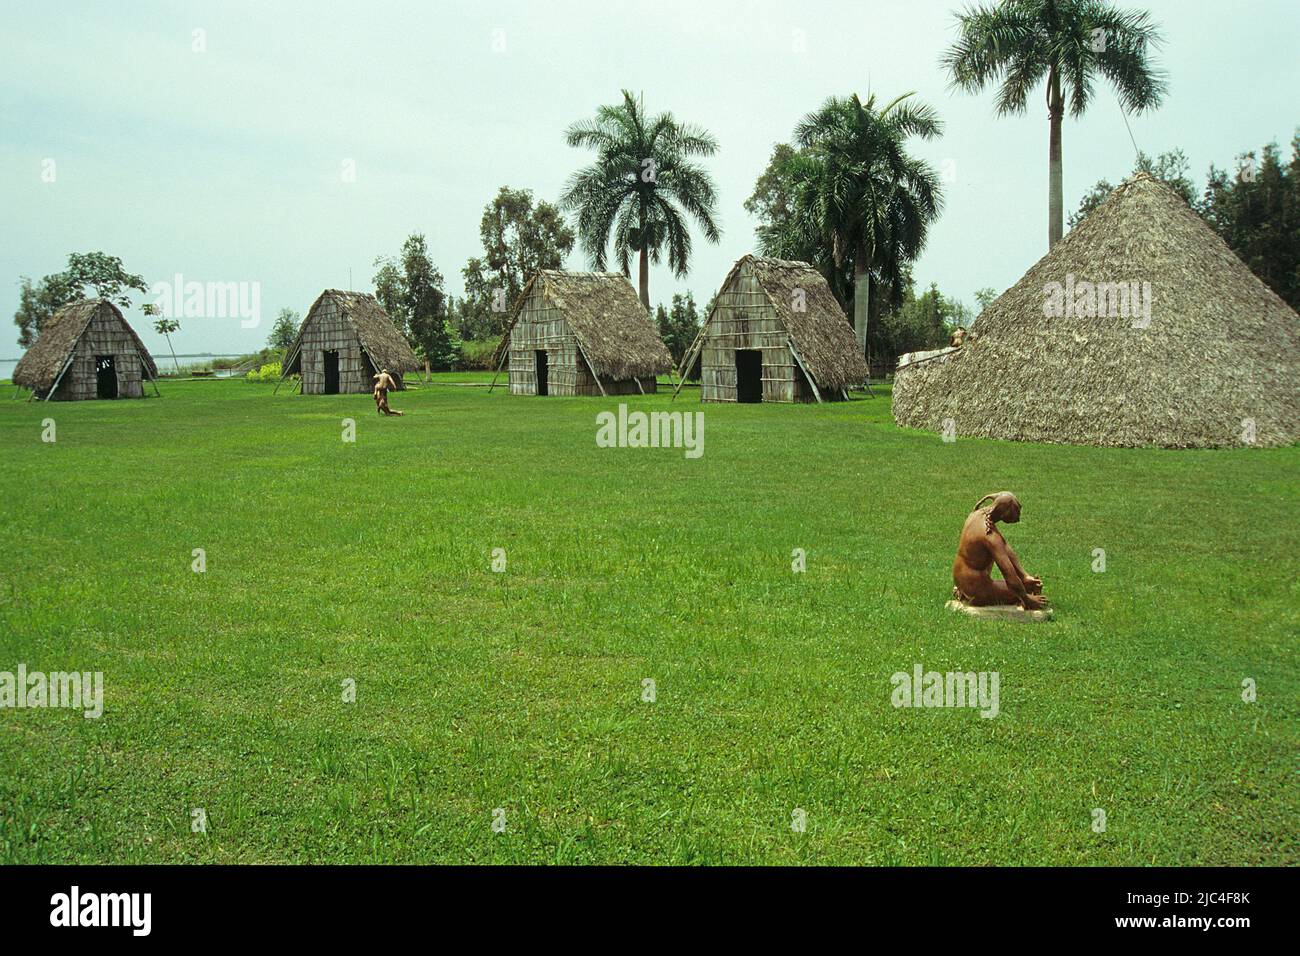 Reconstruction d'un village indien pré-colombien, parc national Montemar, Guama, Cuba, Caraïbes Banque D'Images